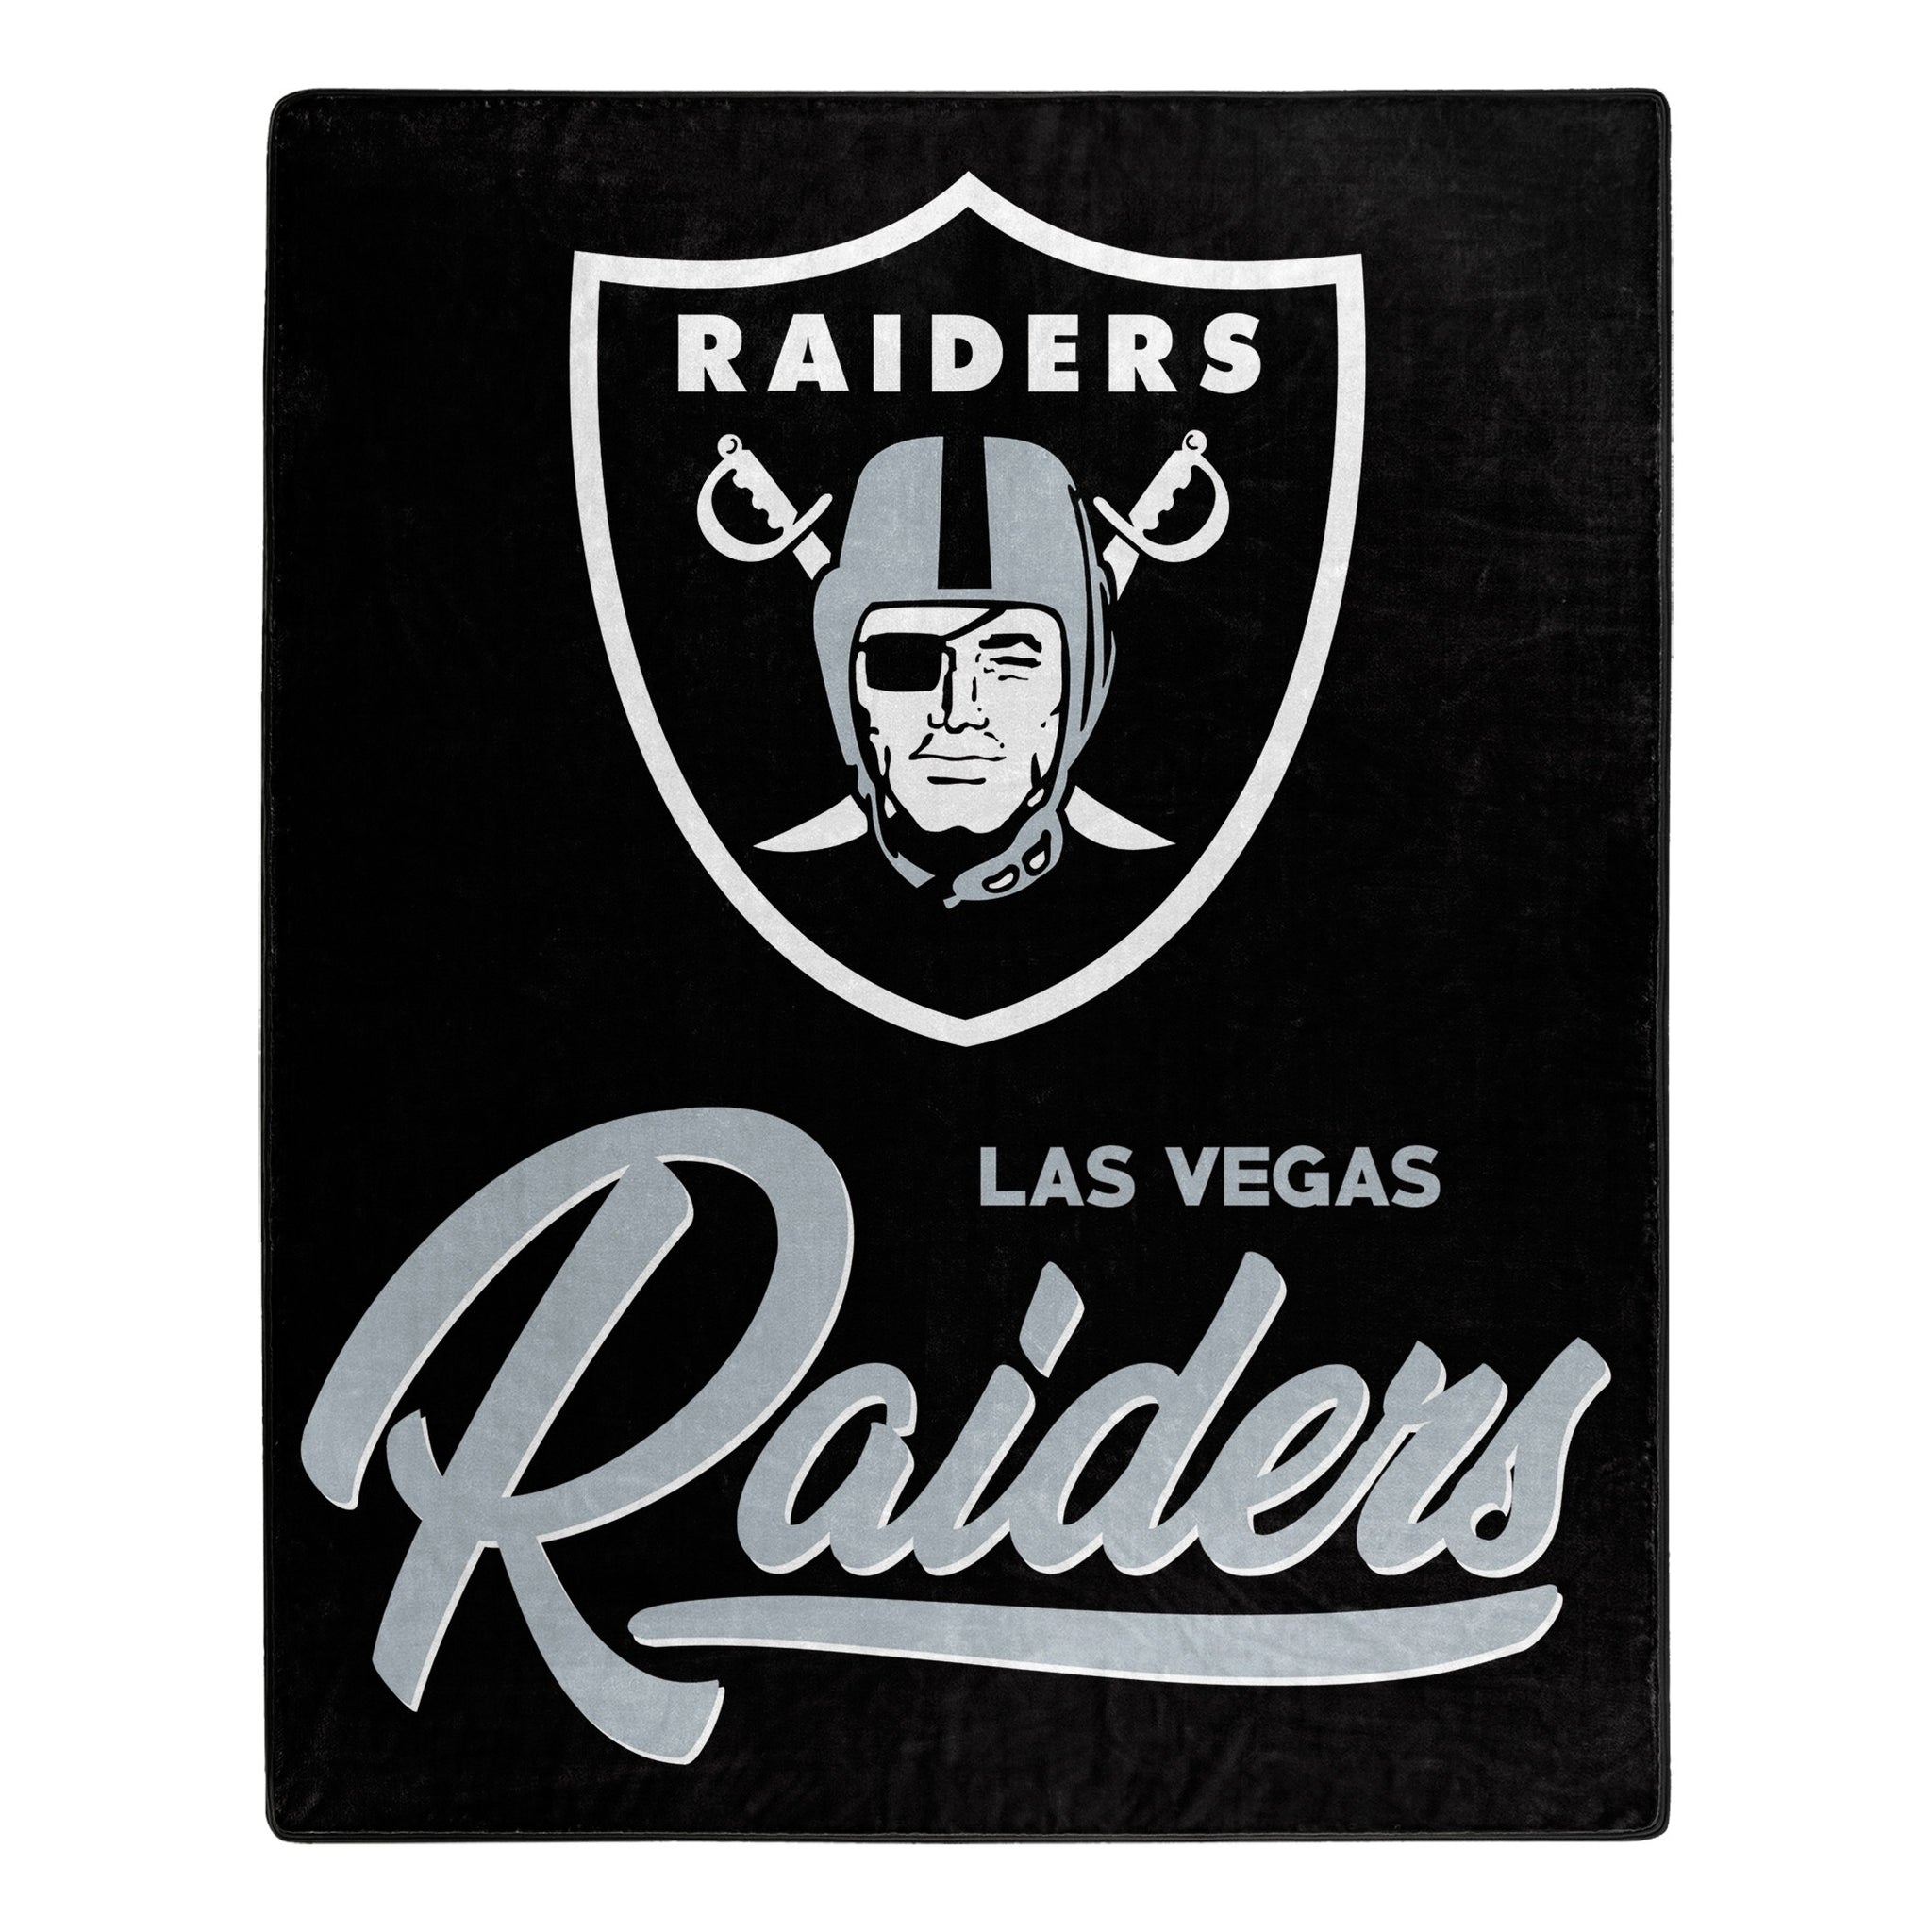 Las Vegas Raiders Blanket 50x60 Raschel Signature Design - Team Spirit Store USA 